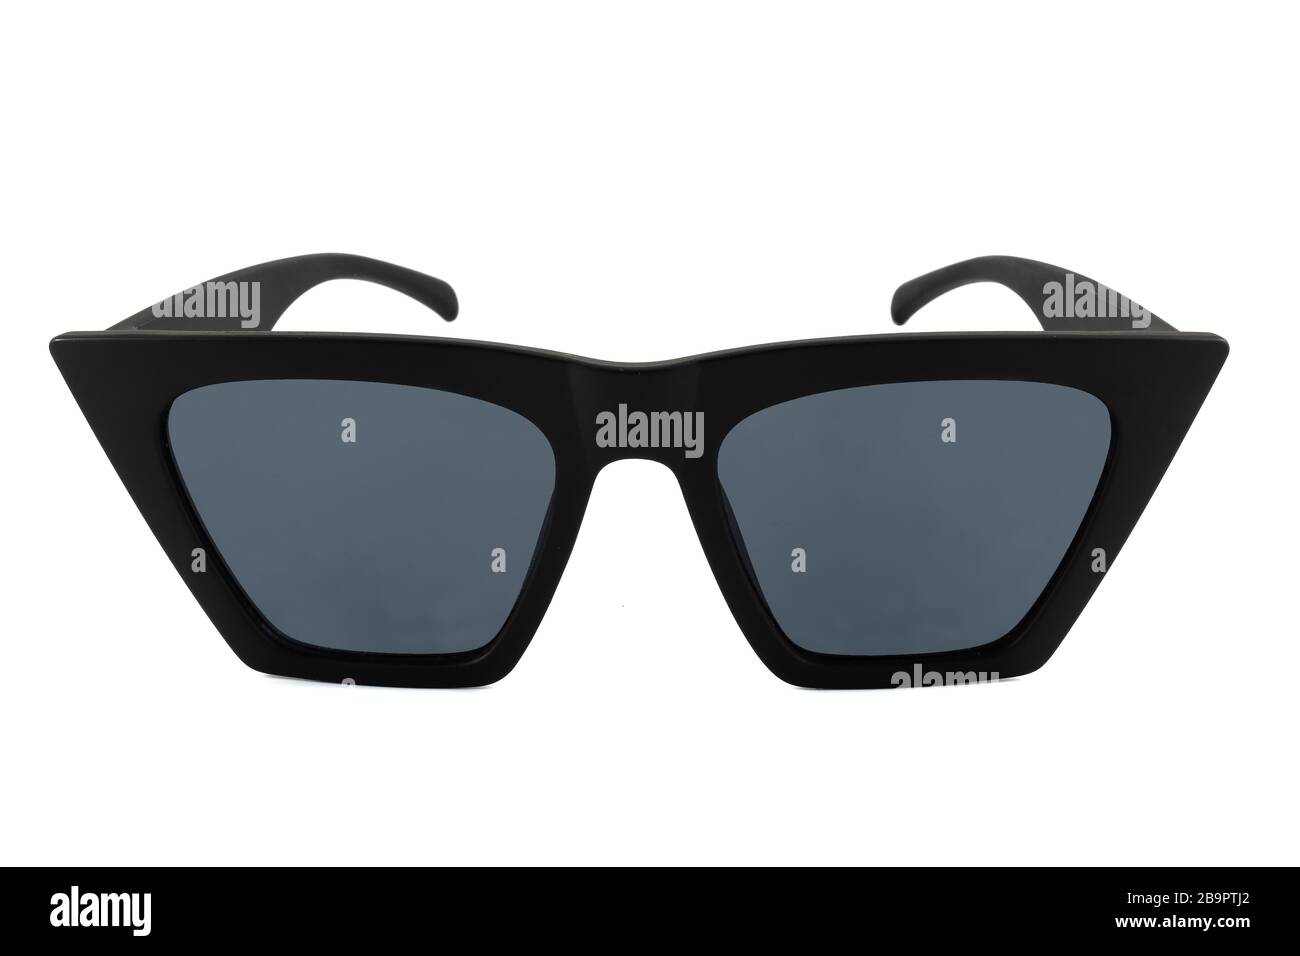 Schwarze Sonnenbrille mit dickem Rahmen und schwarzer Brille, isoliert auf  weißem Hintergrund, Vorderansicht Stockfotografie - Alamy